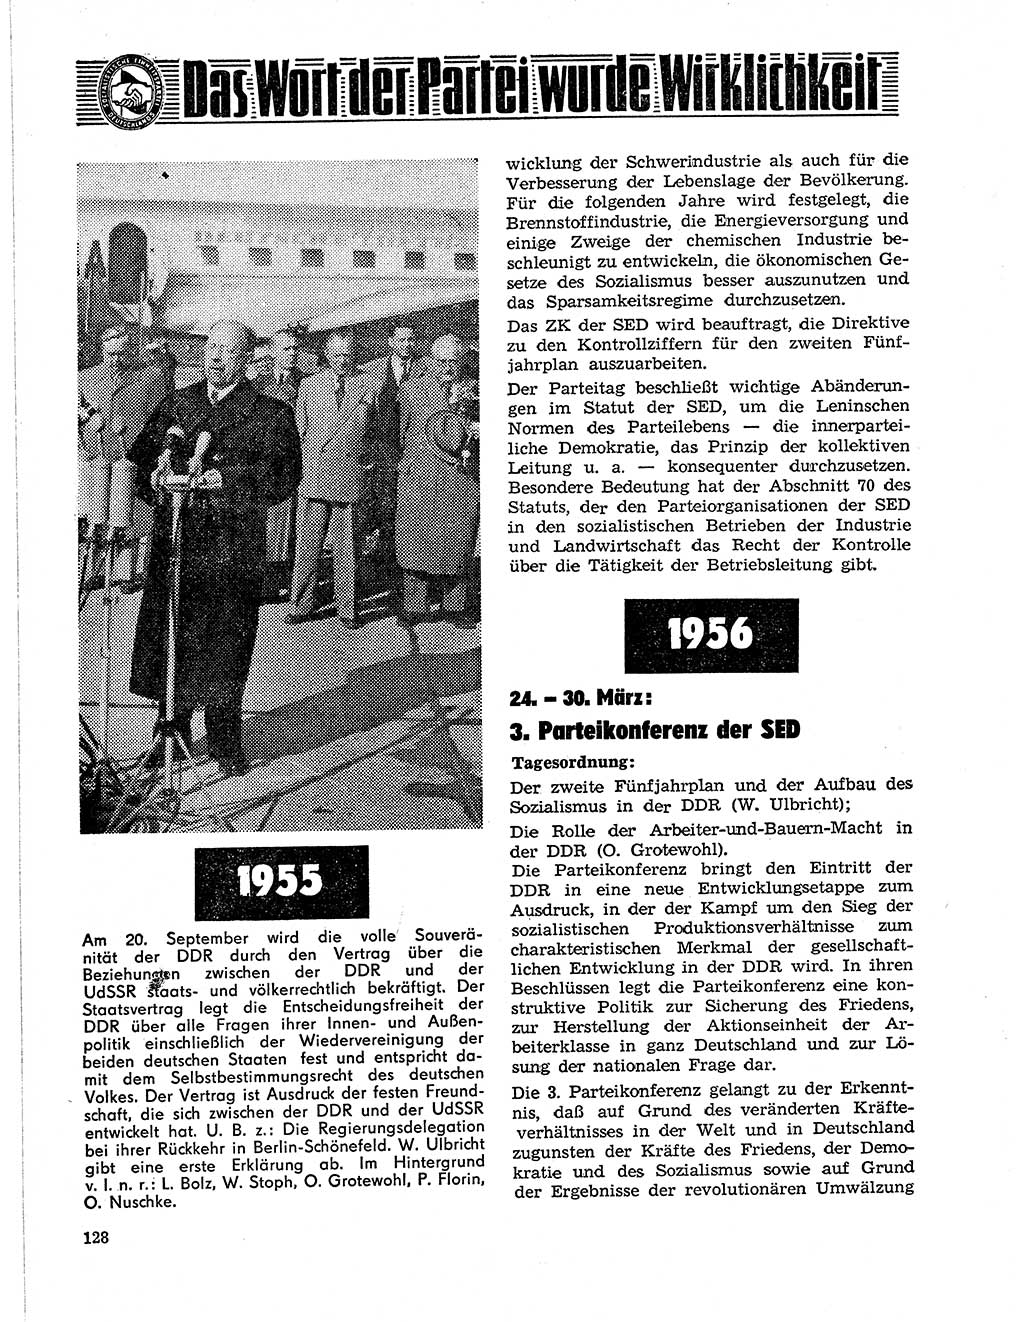 Neuer Weg (NW), Organ des Zentralkomitees (ZK) der SED (Sozialistische Einheitspartei Deutschlands) für Fragen des Parteilebens, 21. Jahrgang [Deutsche Demokratische Republik (DDR)] 1966, Seite 128 (NW ZK SED DDR 1966, S. 128)